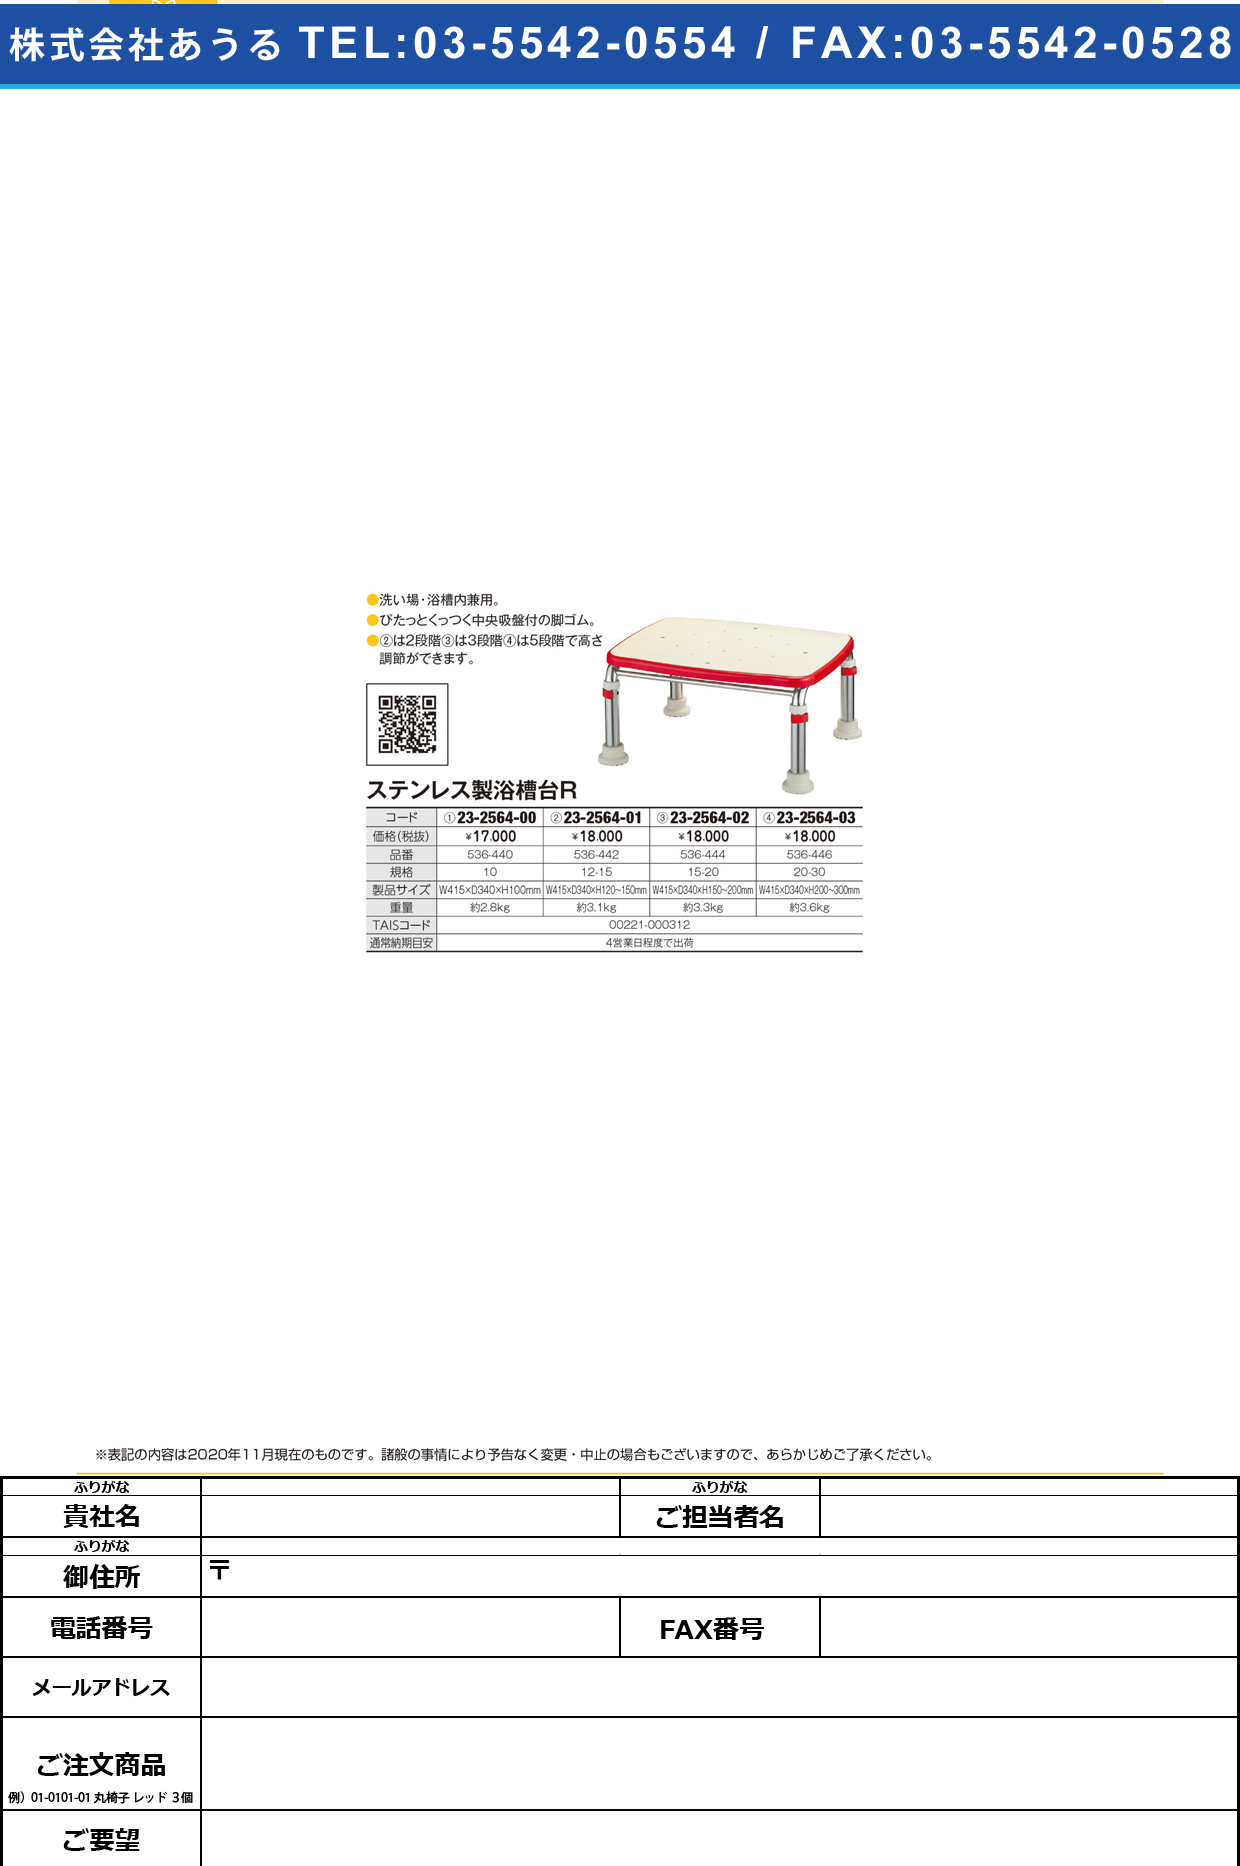 ステンレス製浴槽台R 536-440(10)536-440(10)(23-2564-00)【アロン化成】(販売単位:1)